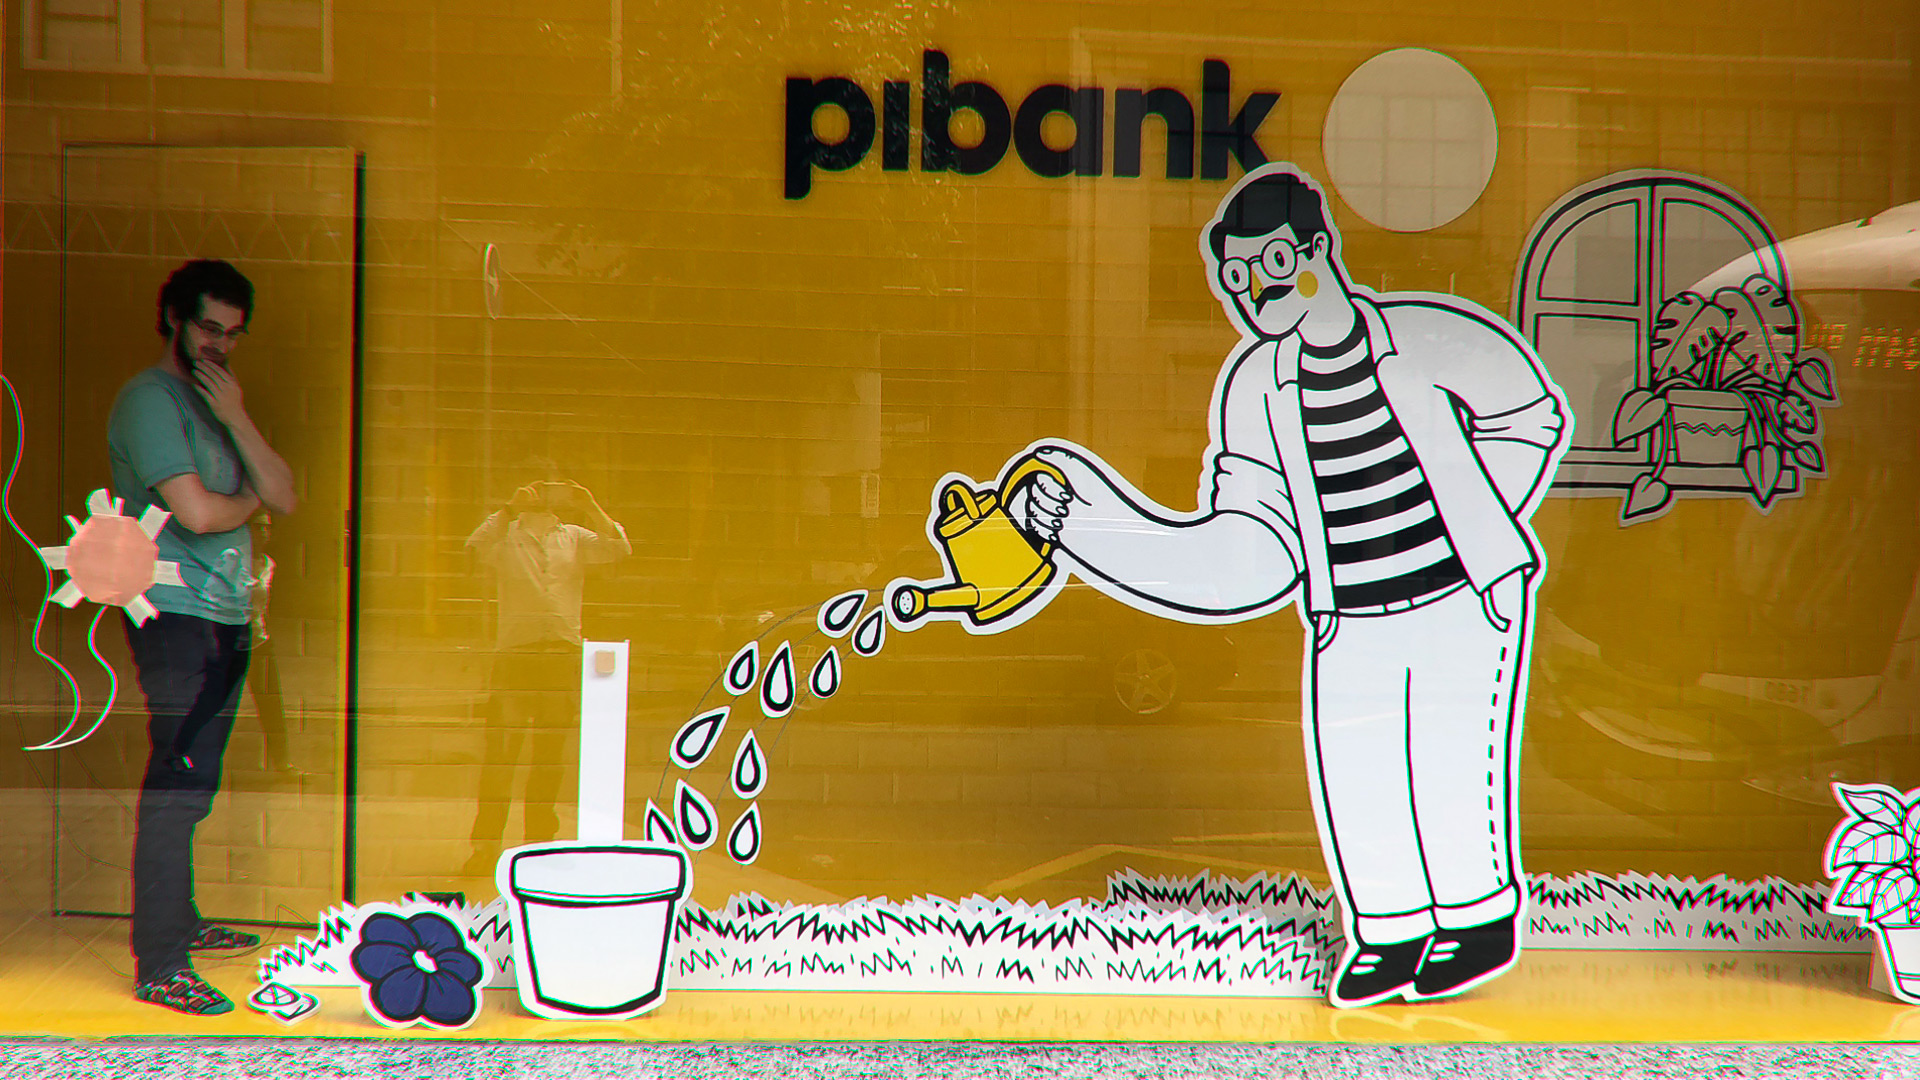 Escaparate de un banco Pibank